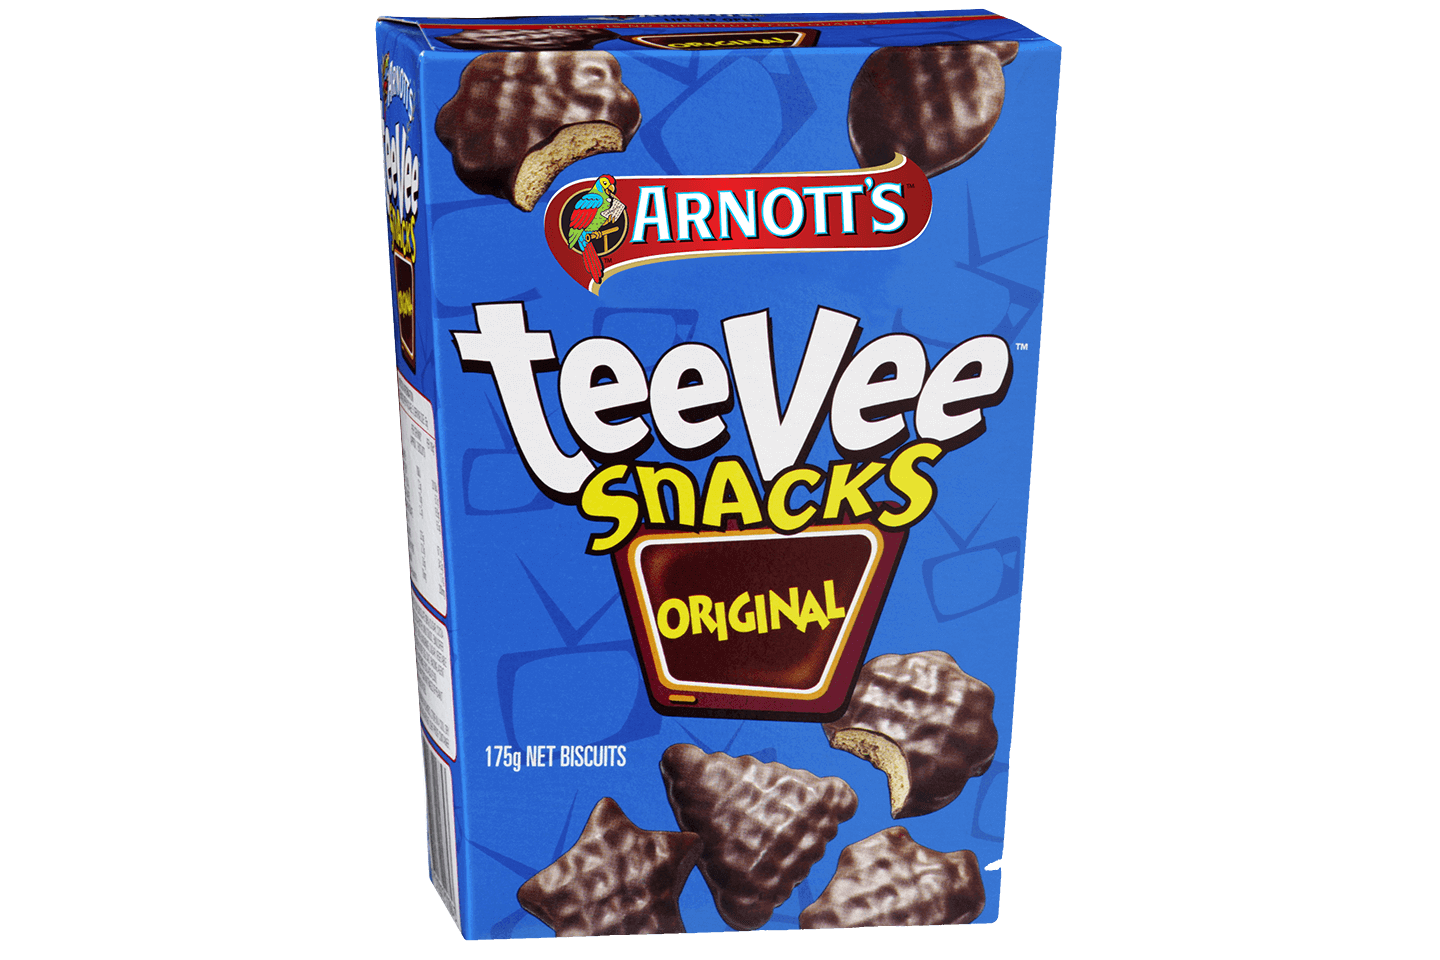 Pack Shot for teeVee Snacks Original